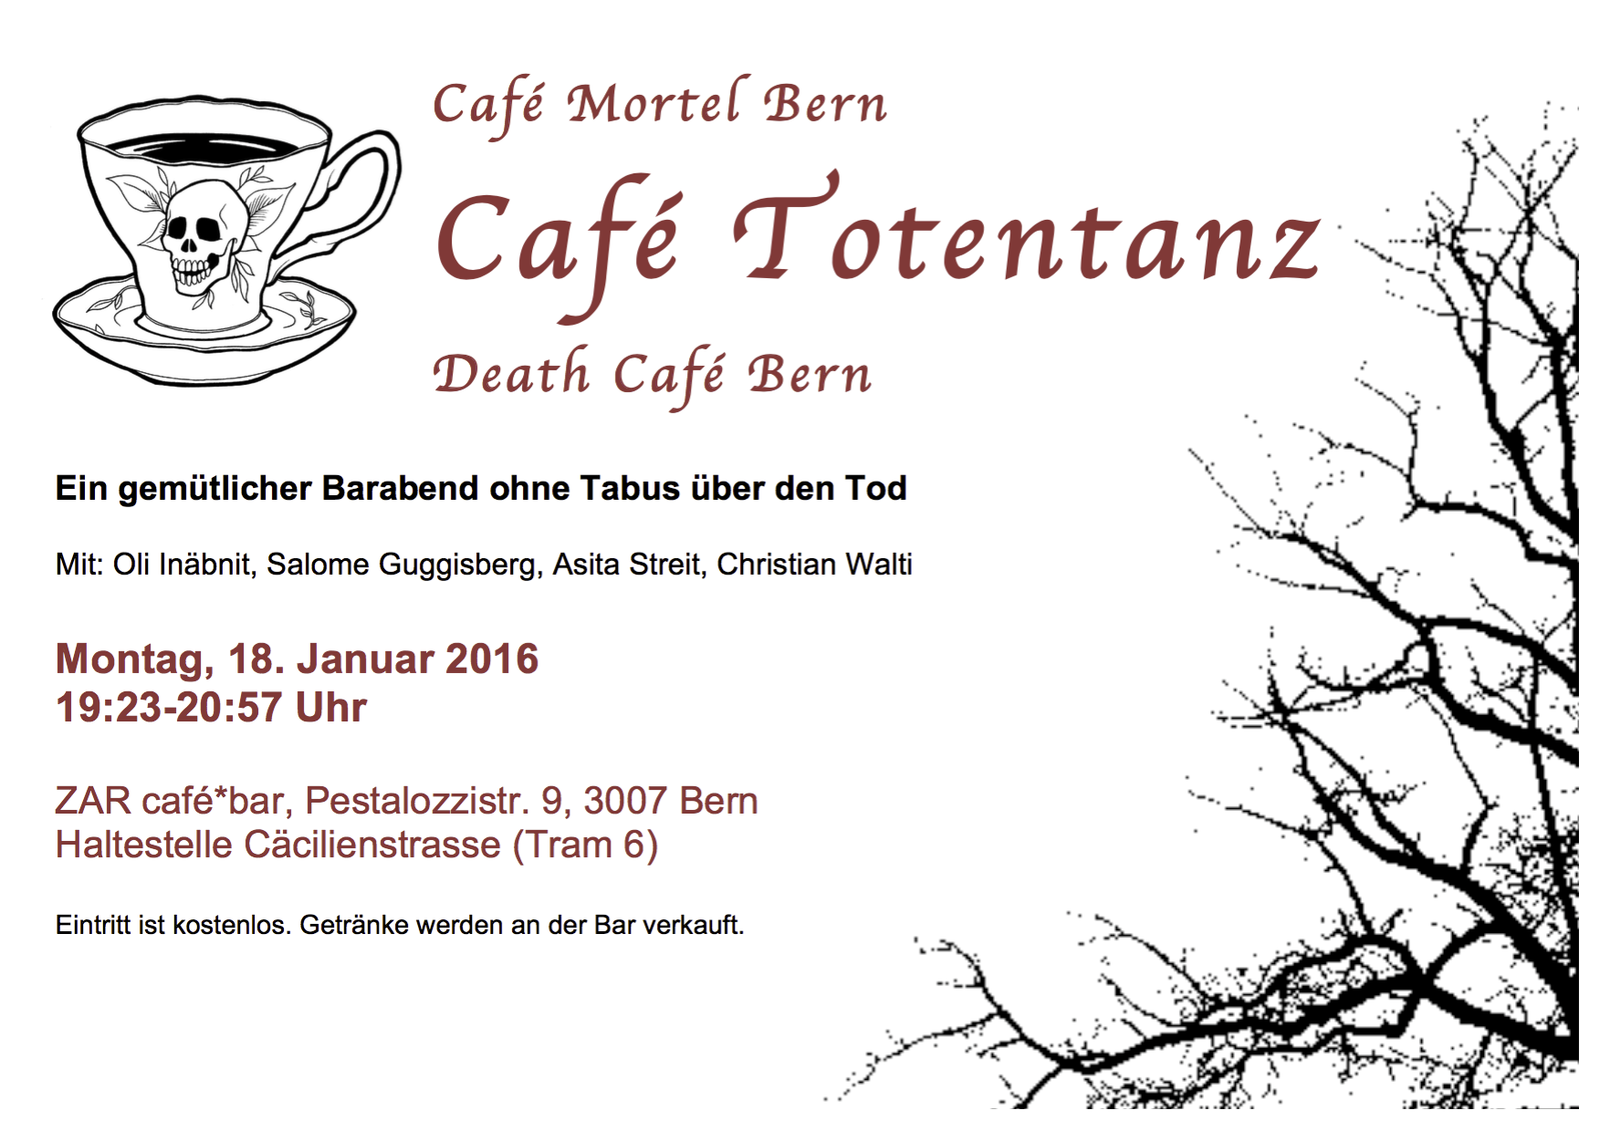 Death Cafe Bern // Café Mortel Berne // Café Totentanz